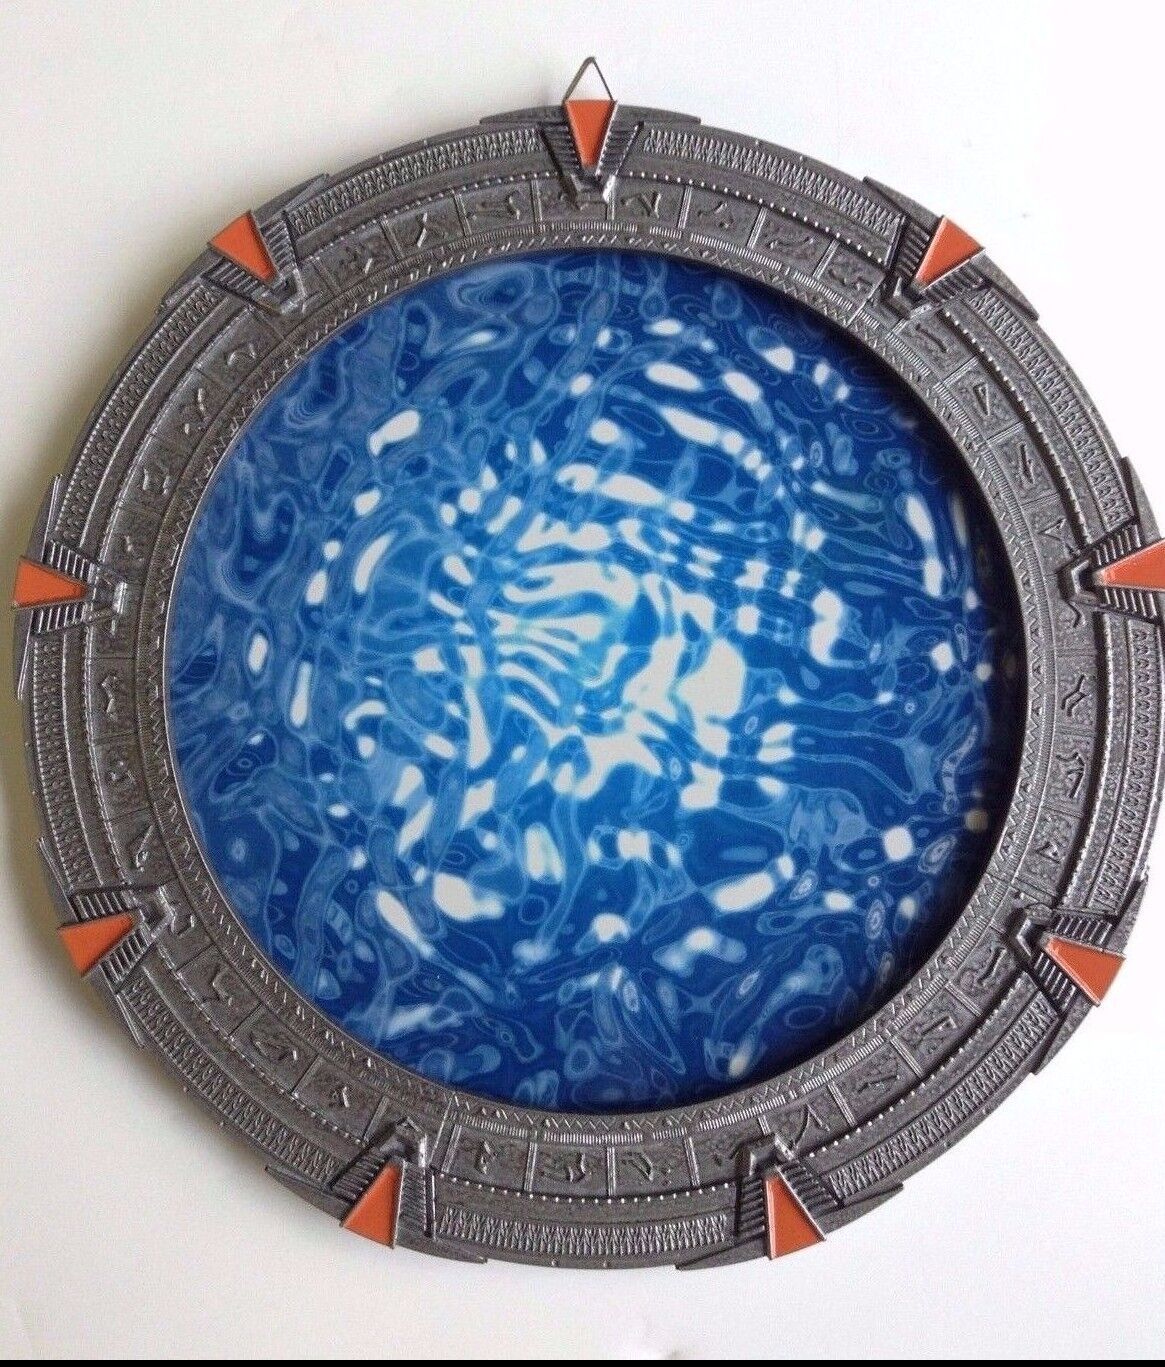 Stargate w/ Event Horizon - SG1 12 inches (30 cm).